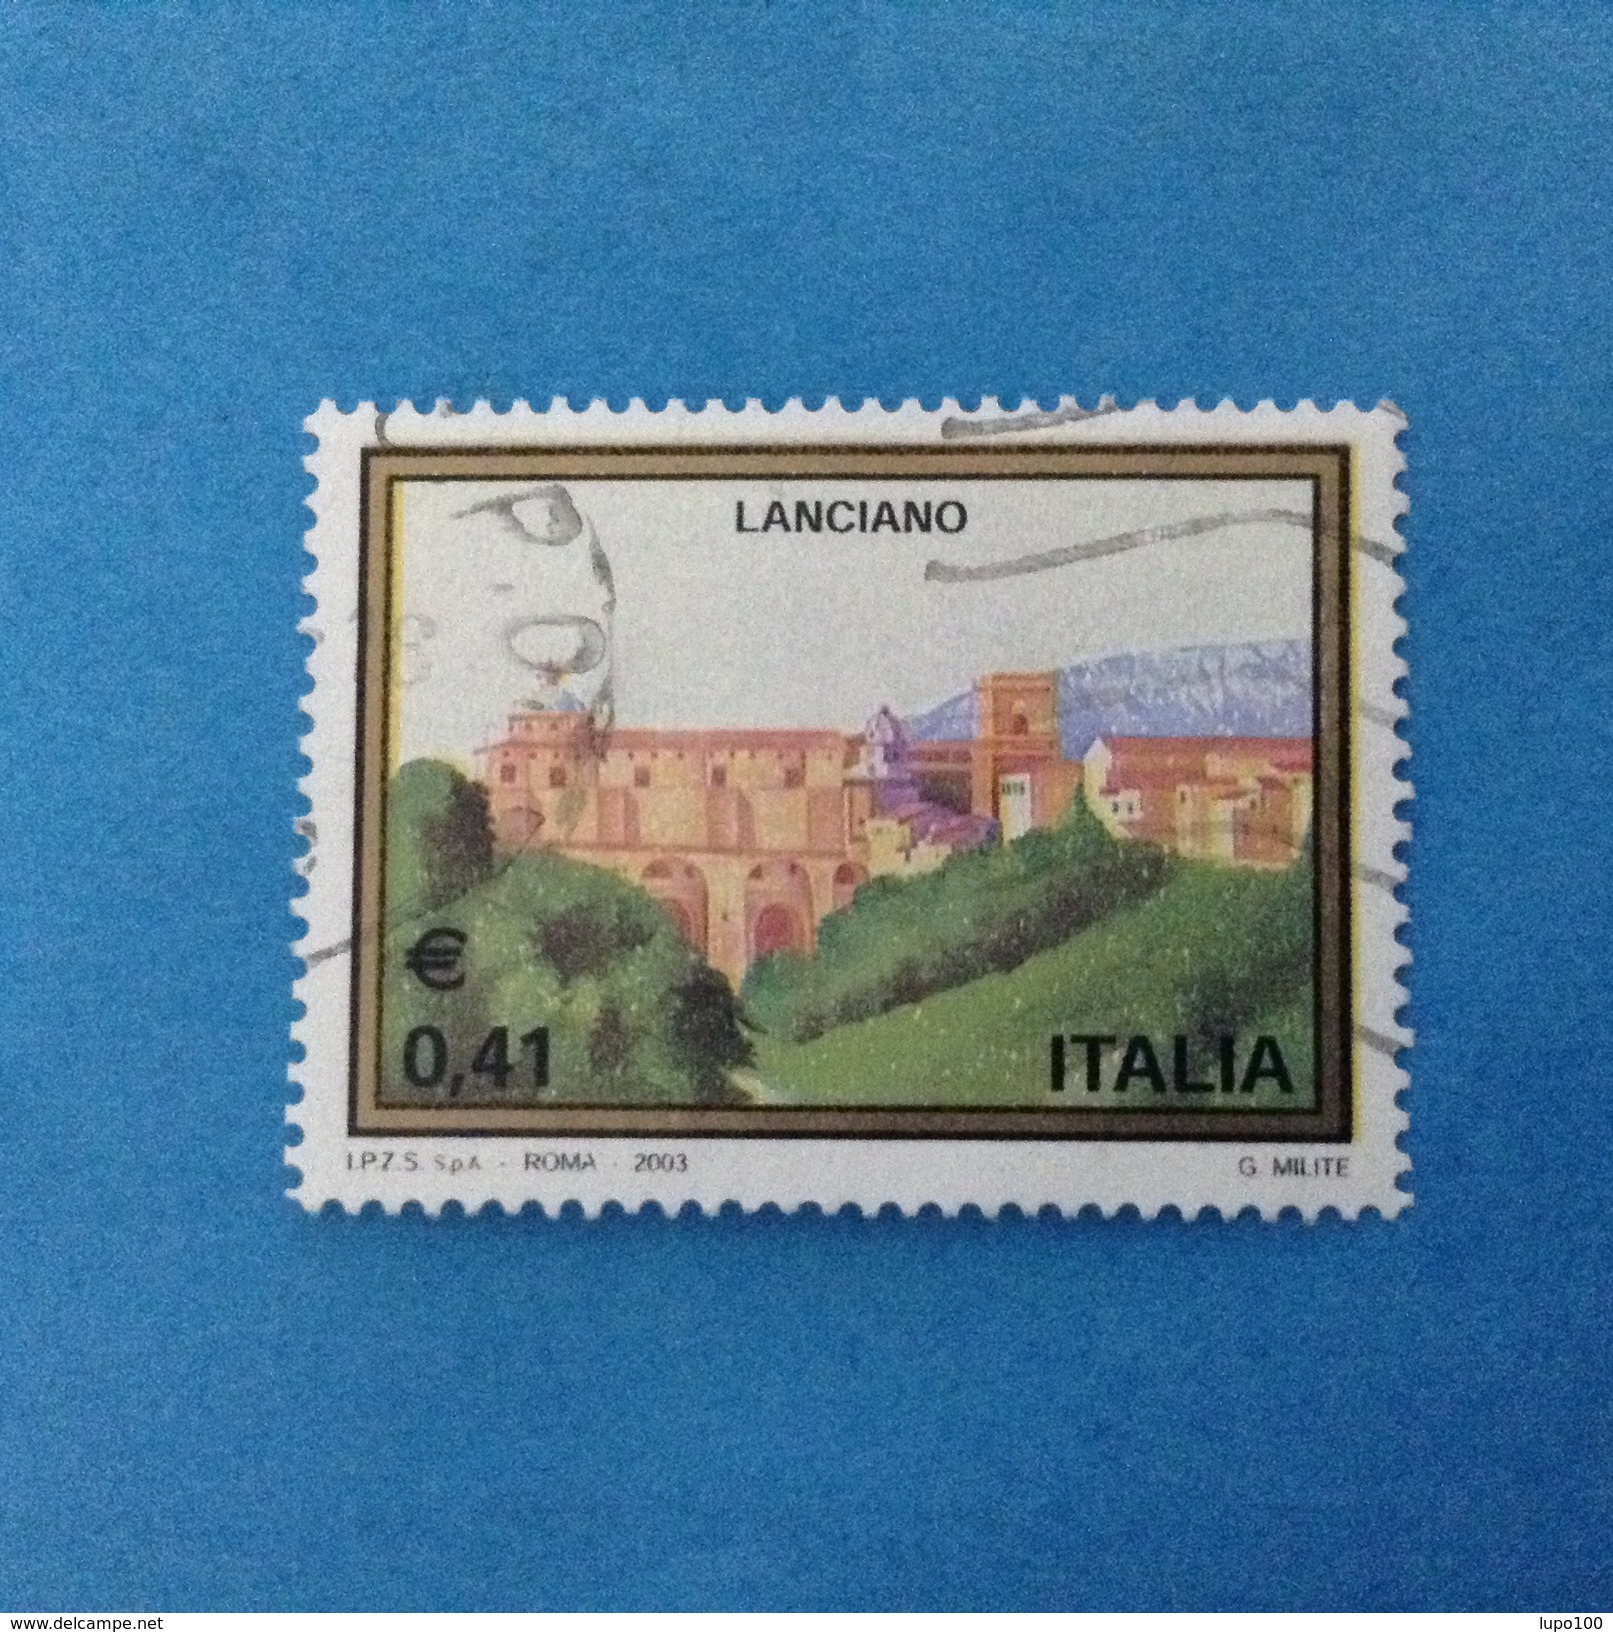 2003 ITALIA FRANCOBOLLO USATO STAMP USED - TURISTICA LANCIANO - - 2001-10: Usati